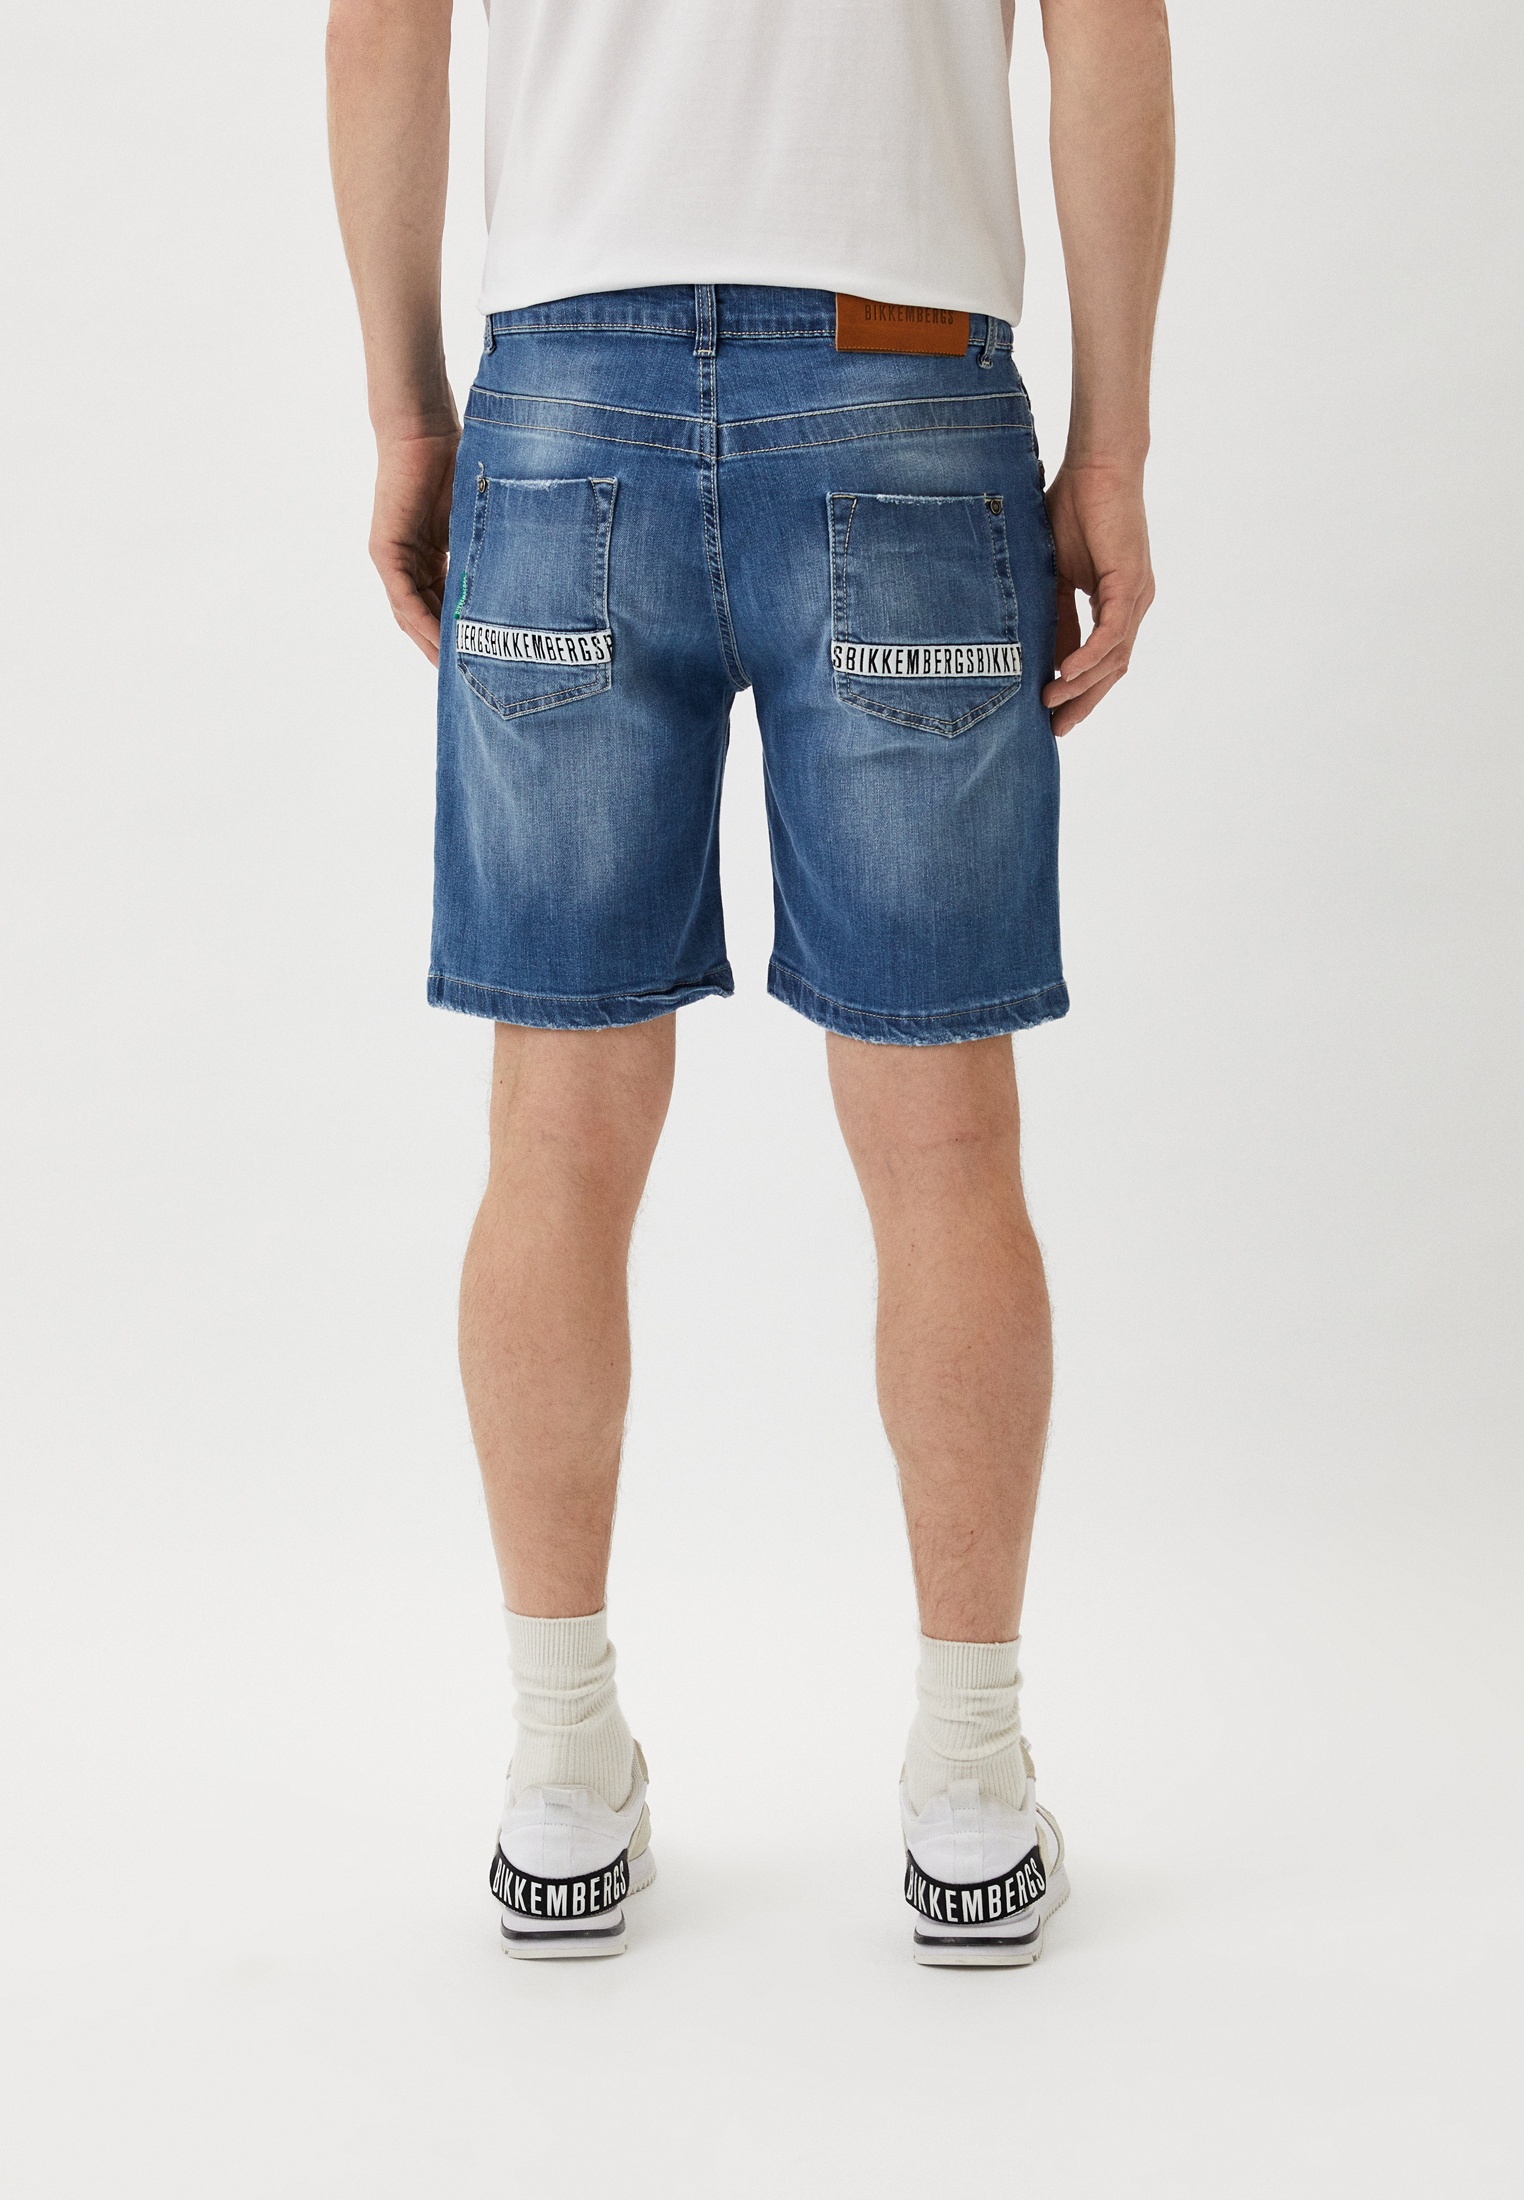 Мужские джинсовые шорты Bikkembergs (Биккембергс) PBMD0002: изображение 3